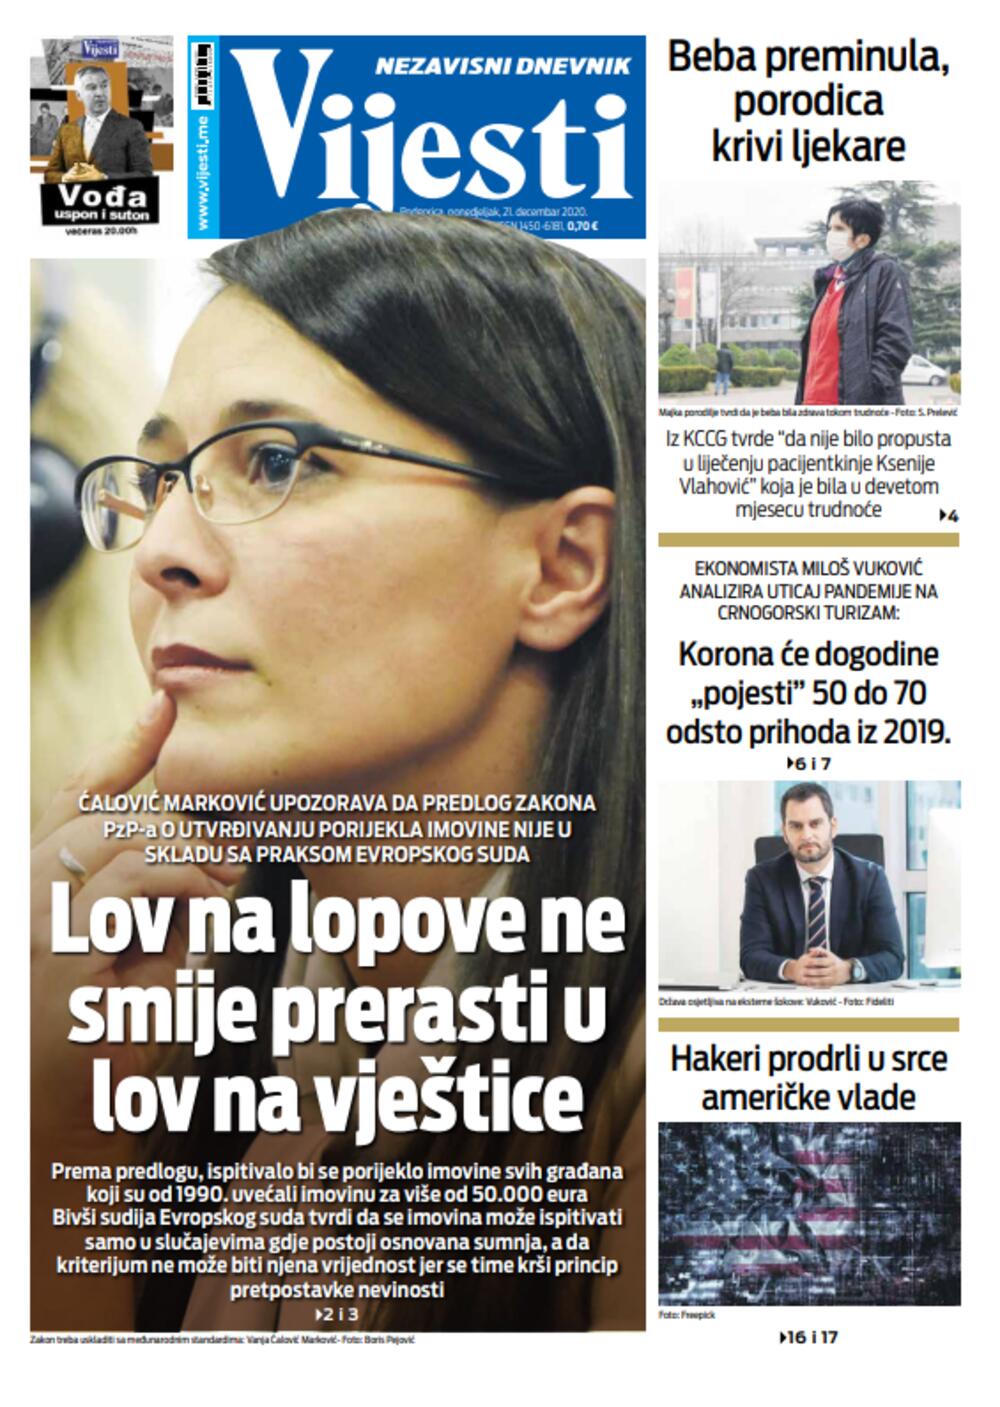 Naslovna strana "Vijesti" za ponedjeljak 21. decembar 2020. godine, Foto: Vijesti